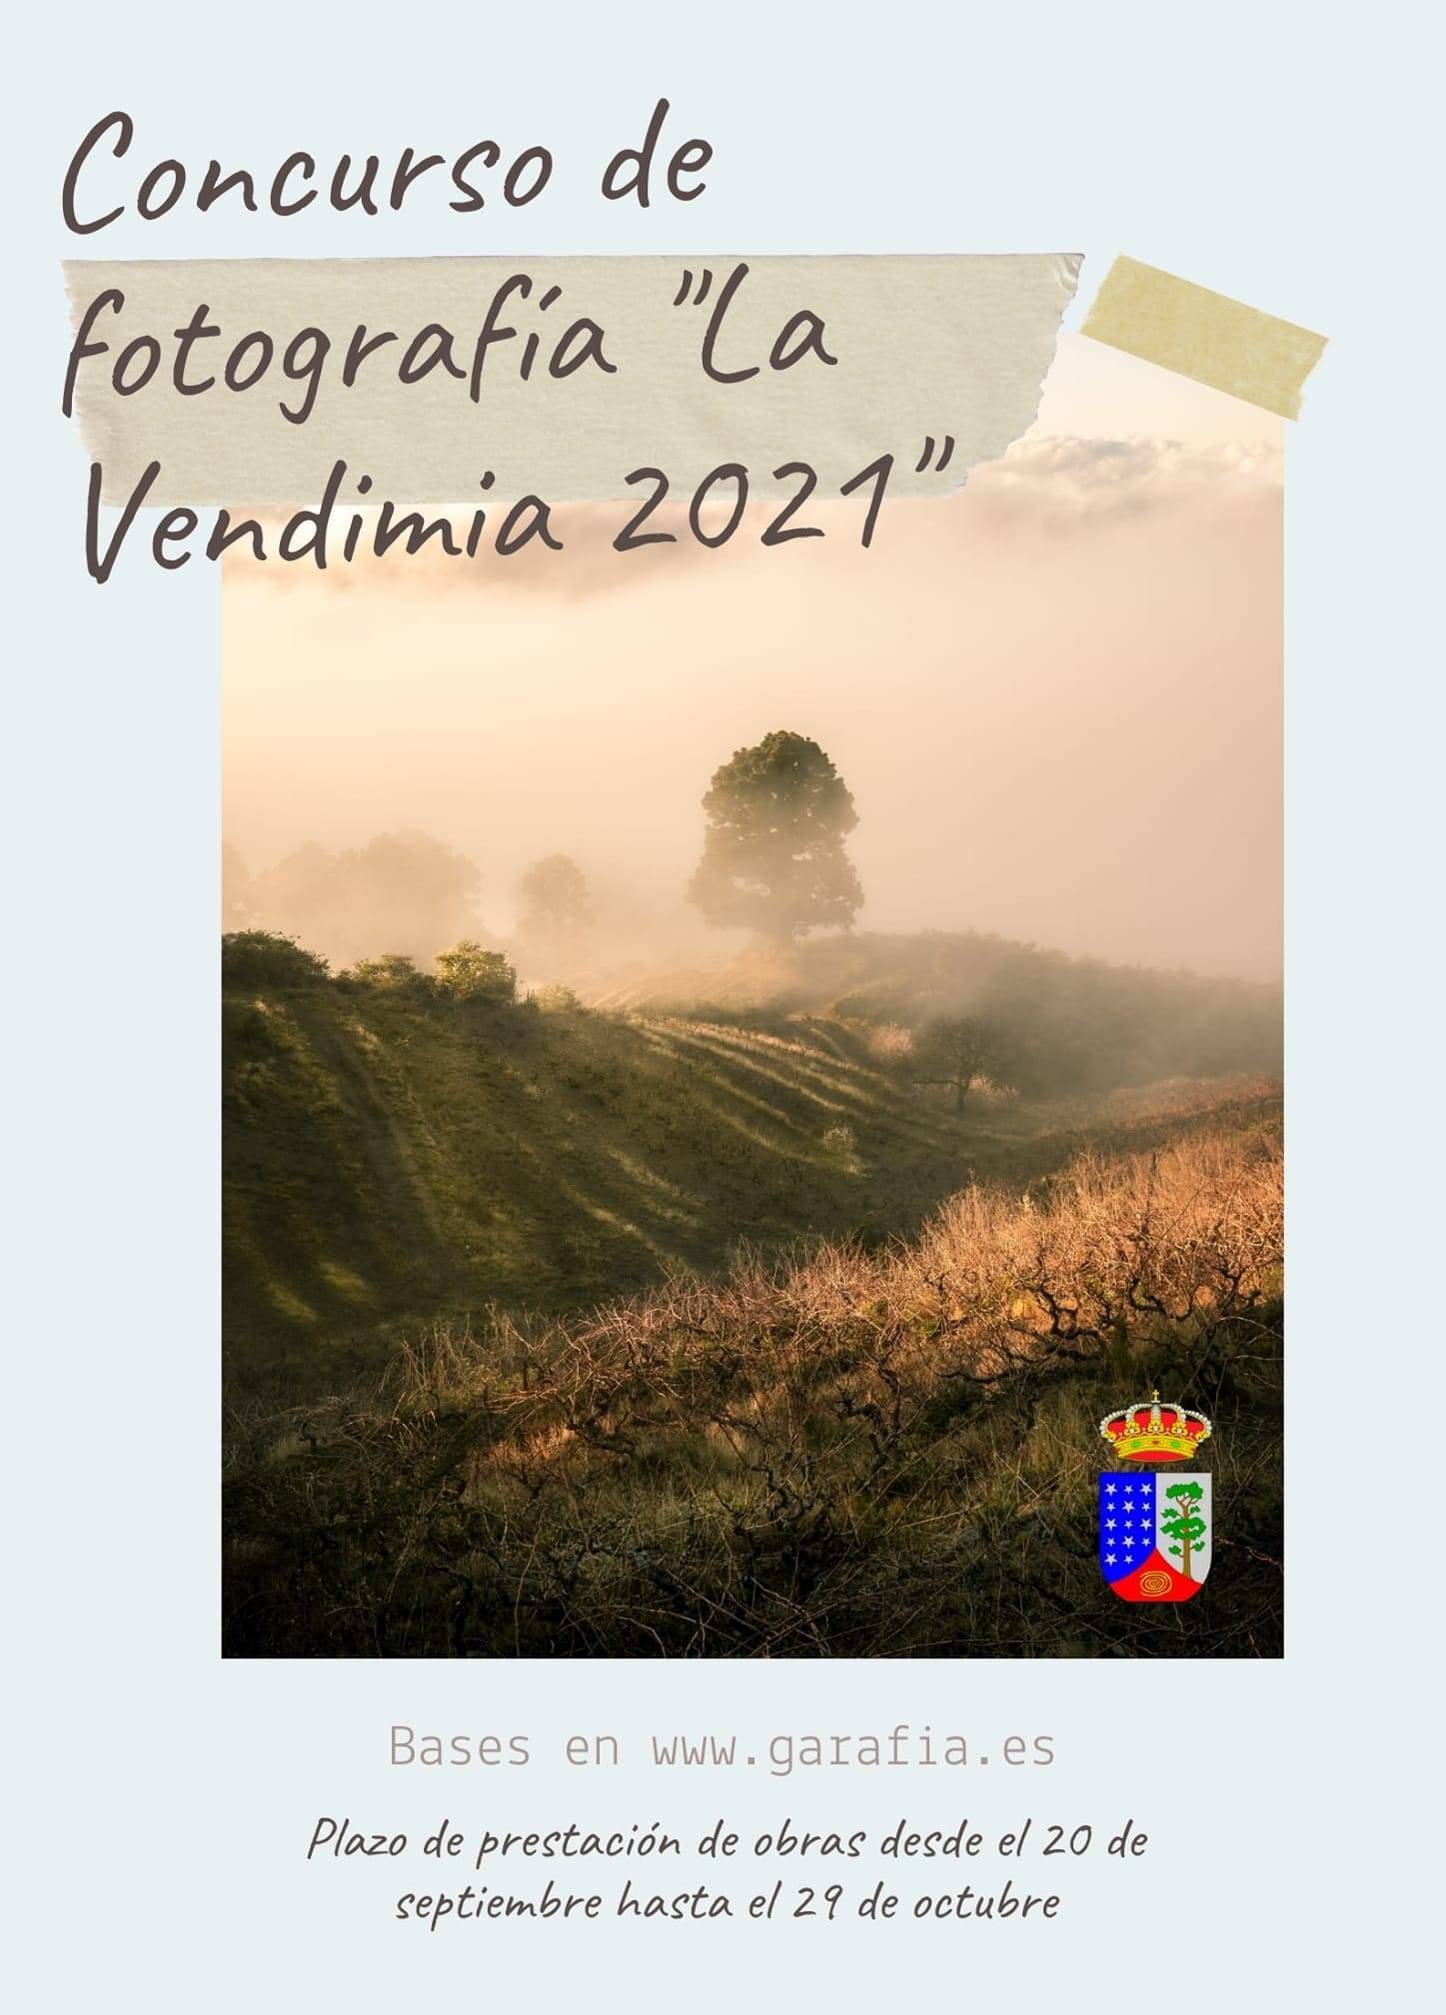 Concurso de fotografía 'La Vendimia' (2021) - Garafía (Santa Cruz de Tenerife)